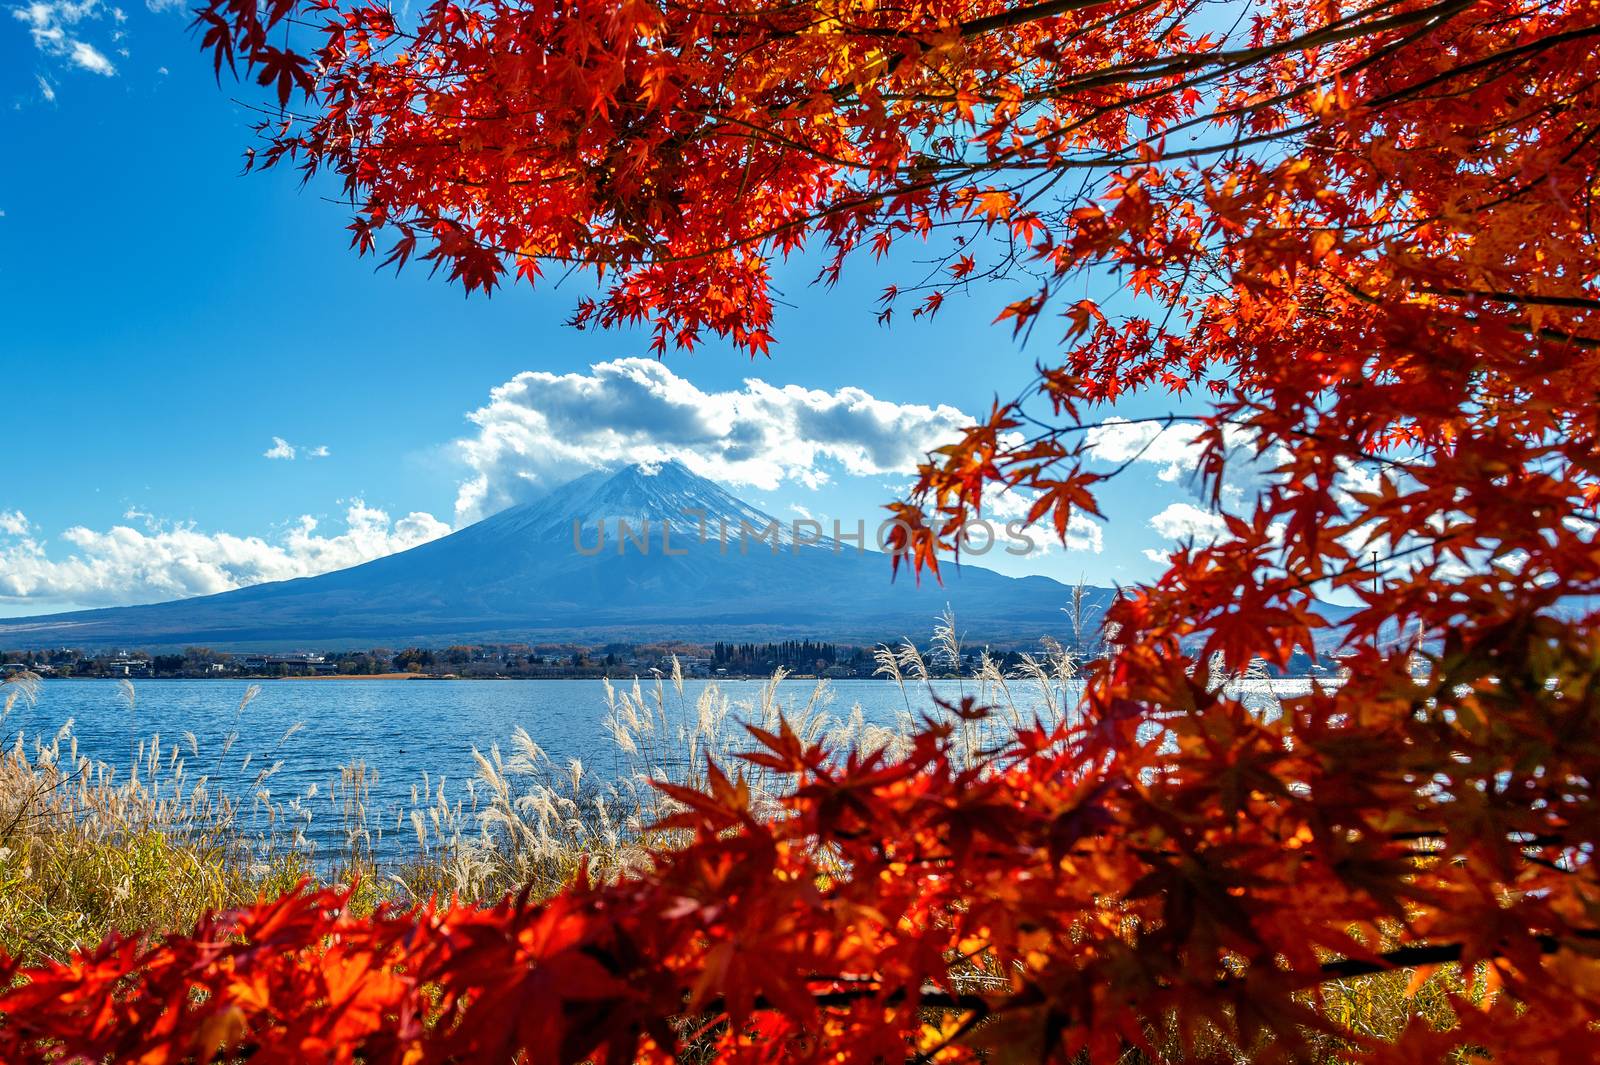 Fuji mountain and Kawaguchiko lake in autumn, Japan. by gutarphotoghaphy